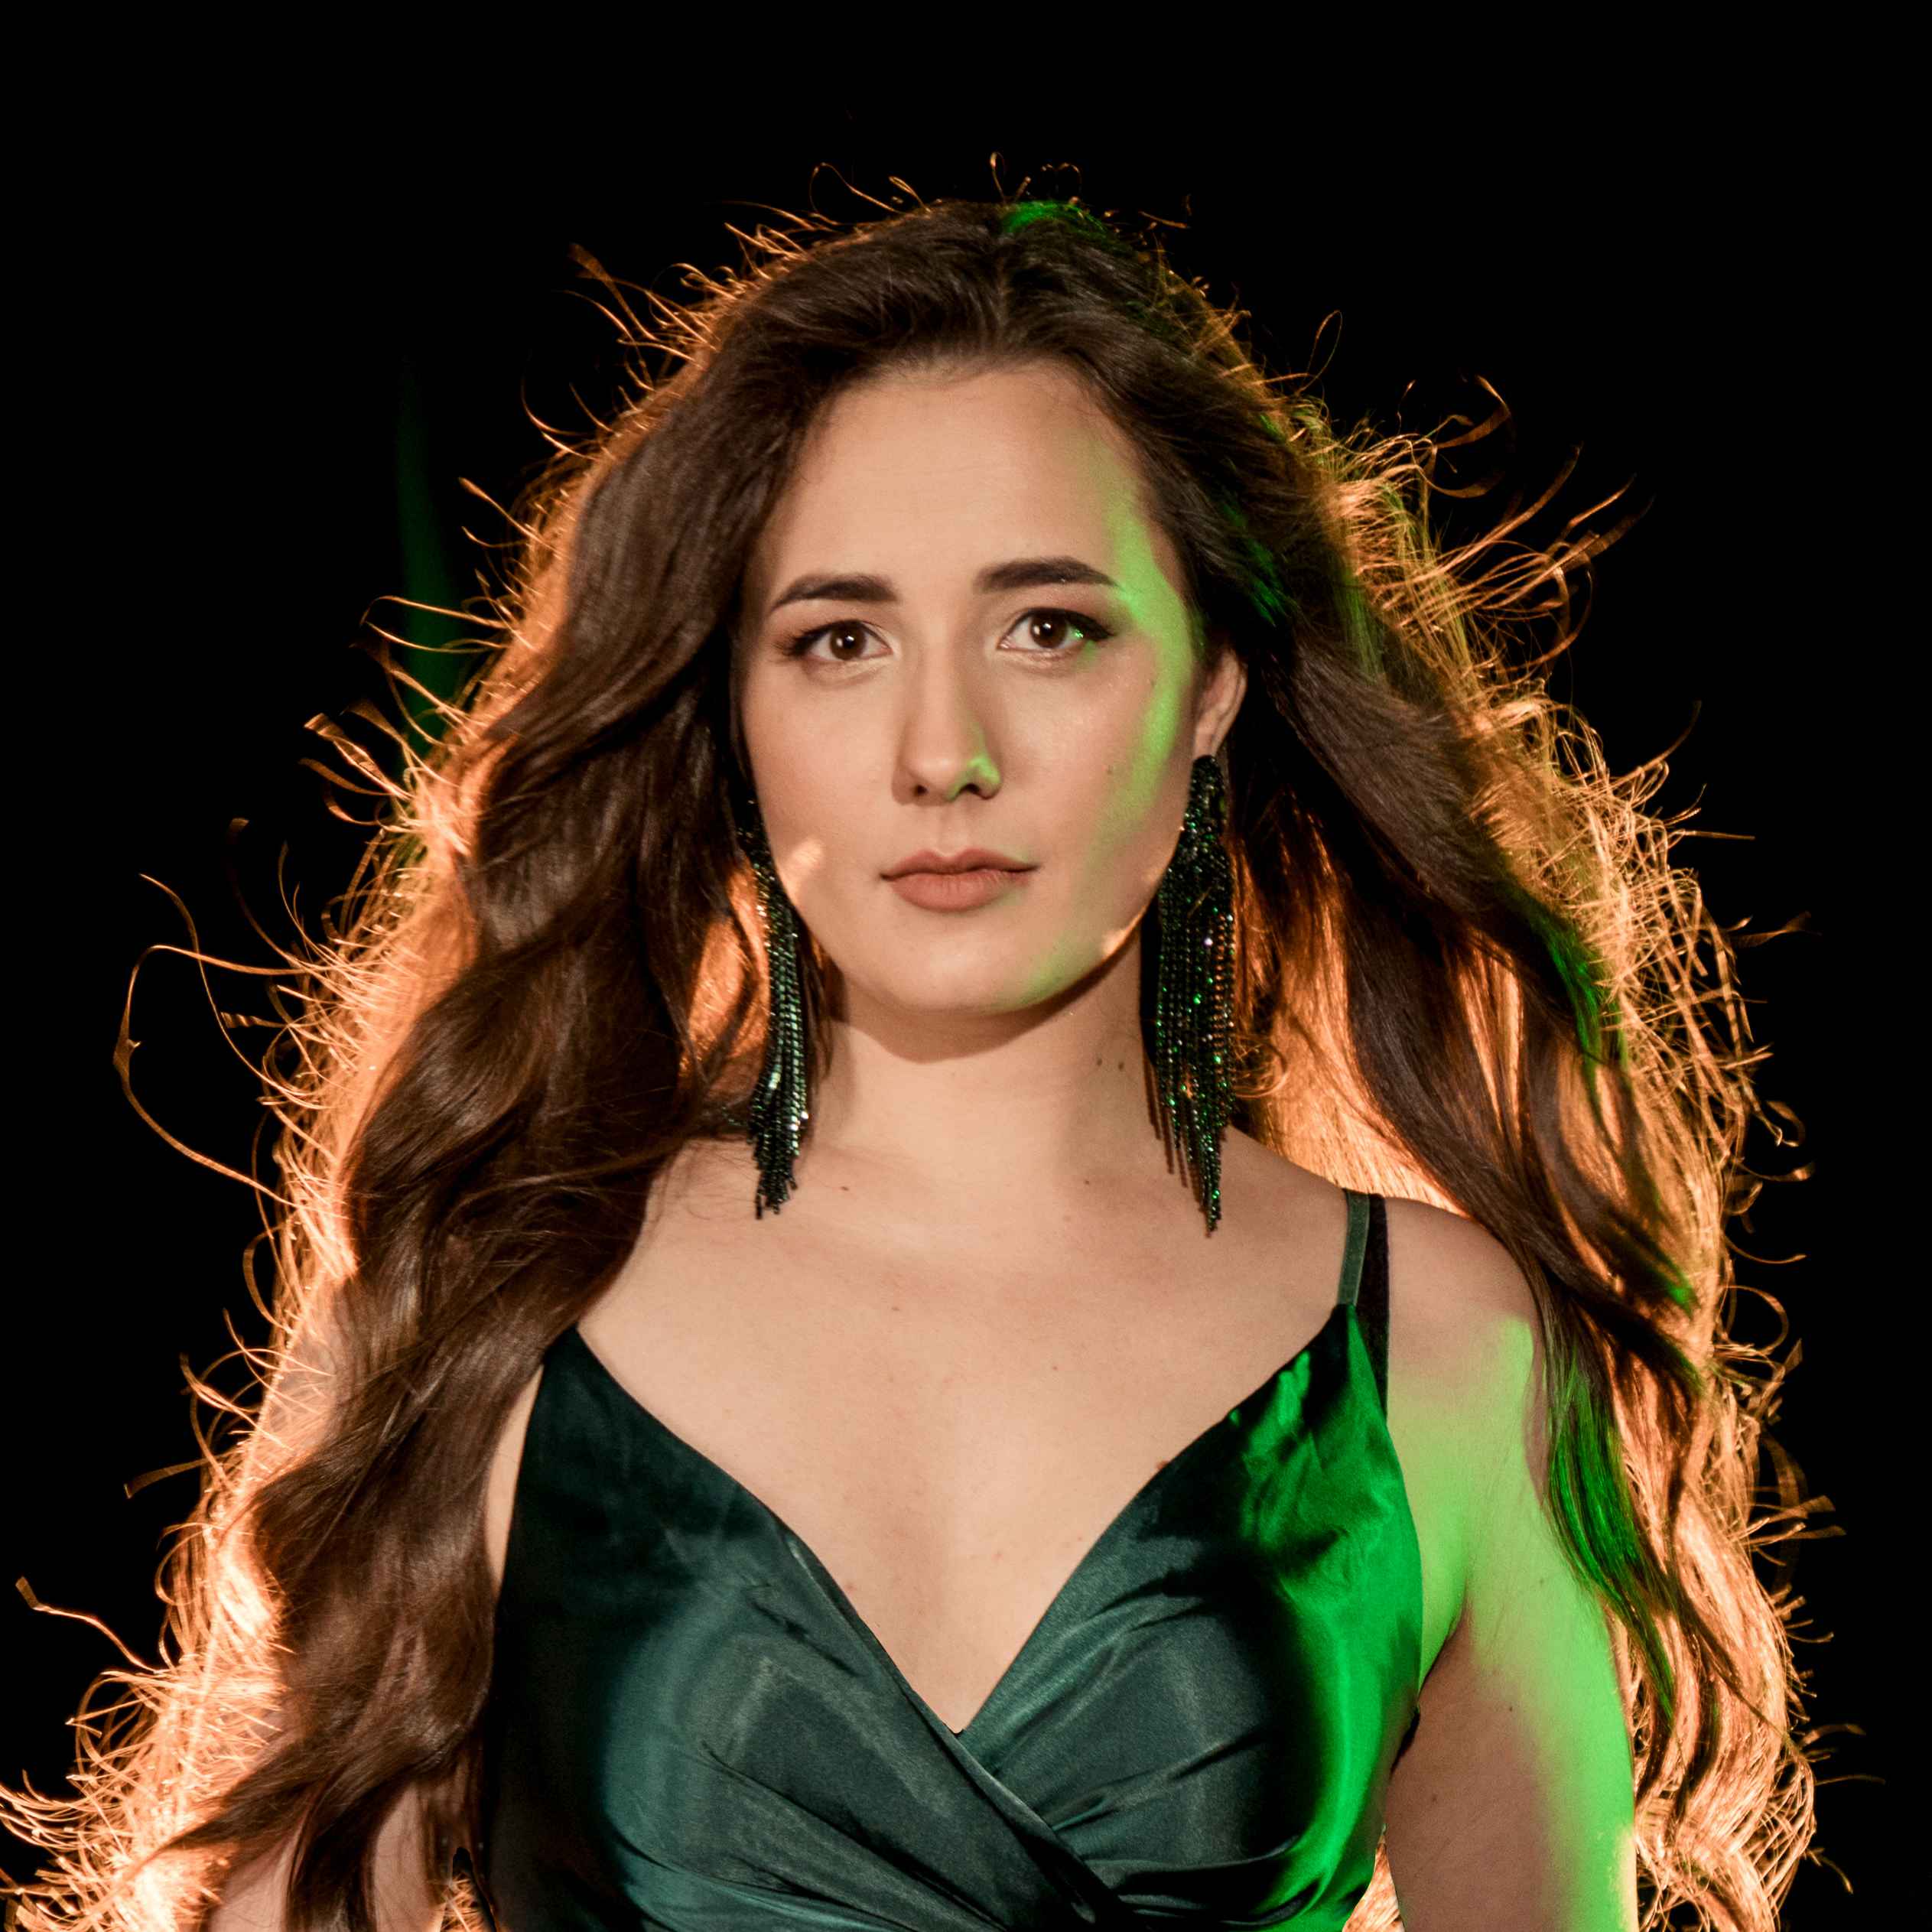 Daria Sushkova - Profile picture 